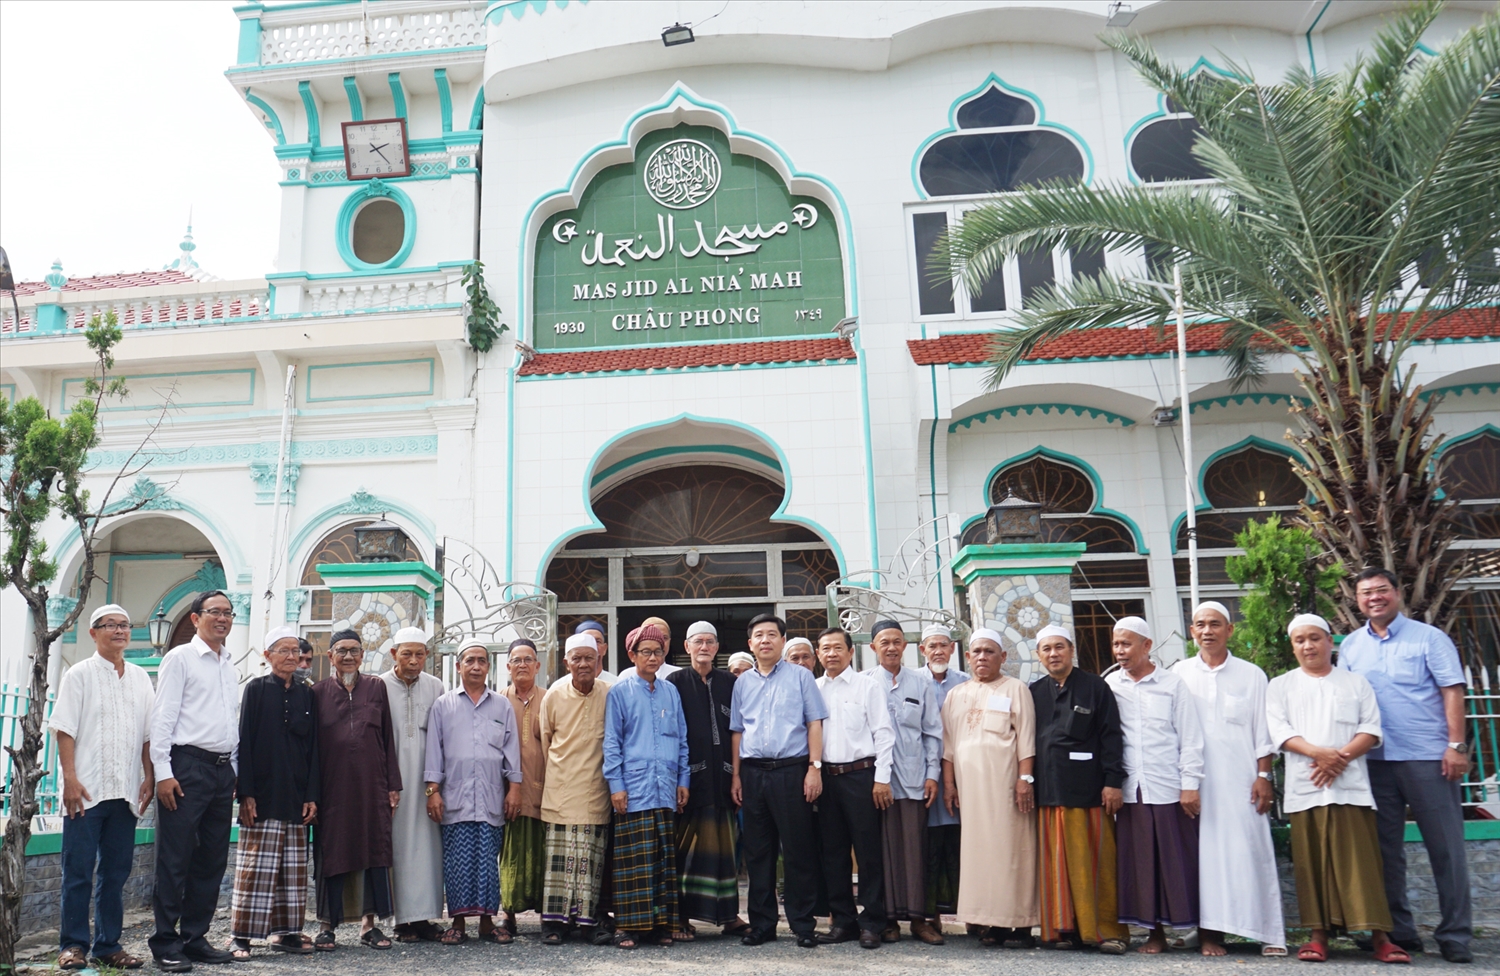 Đoàn công tác chụp ảnh lưu niệm cùng các vị trong Ban Đại diện cộng đồng Hồi giáo và Người có uy tín